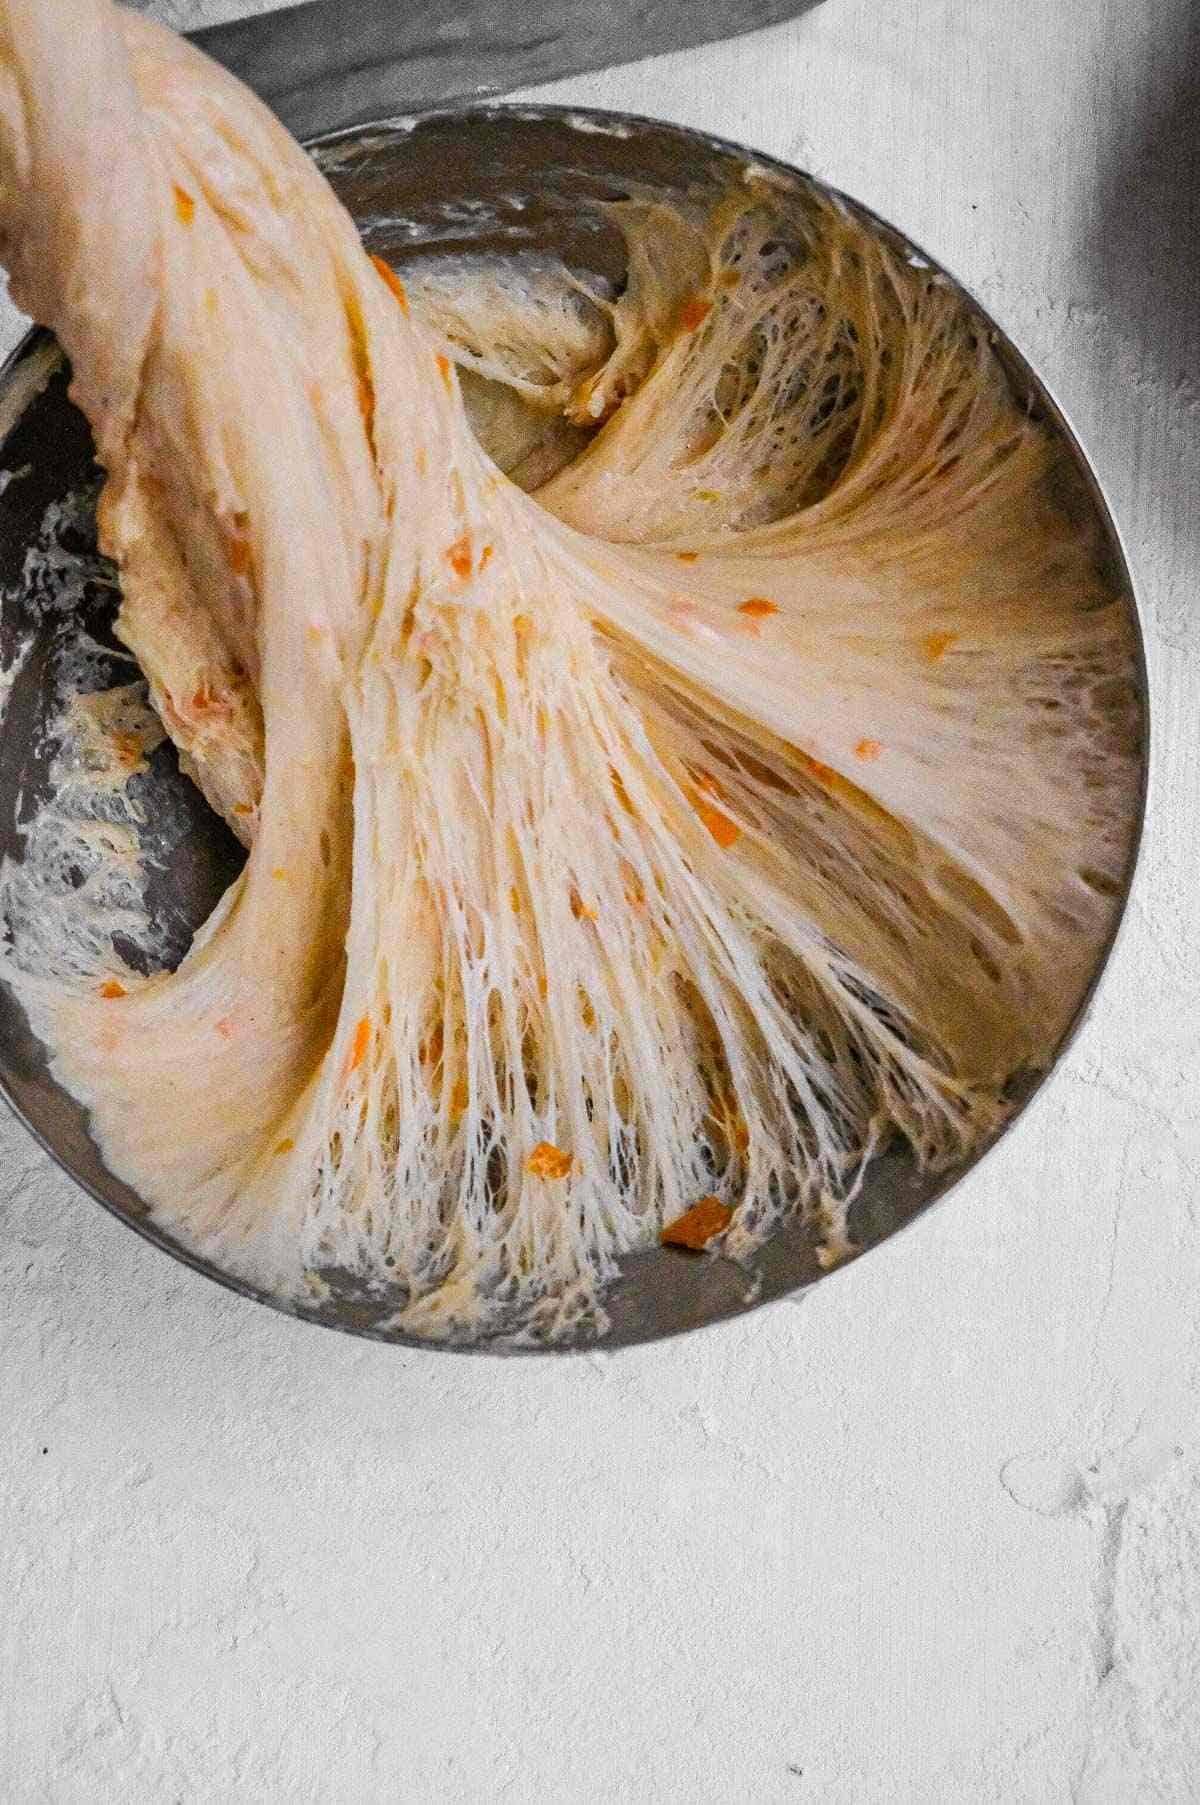 cozonac dough showing gluten structure